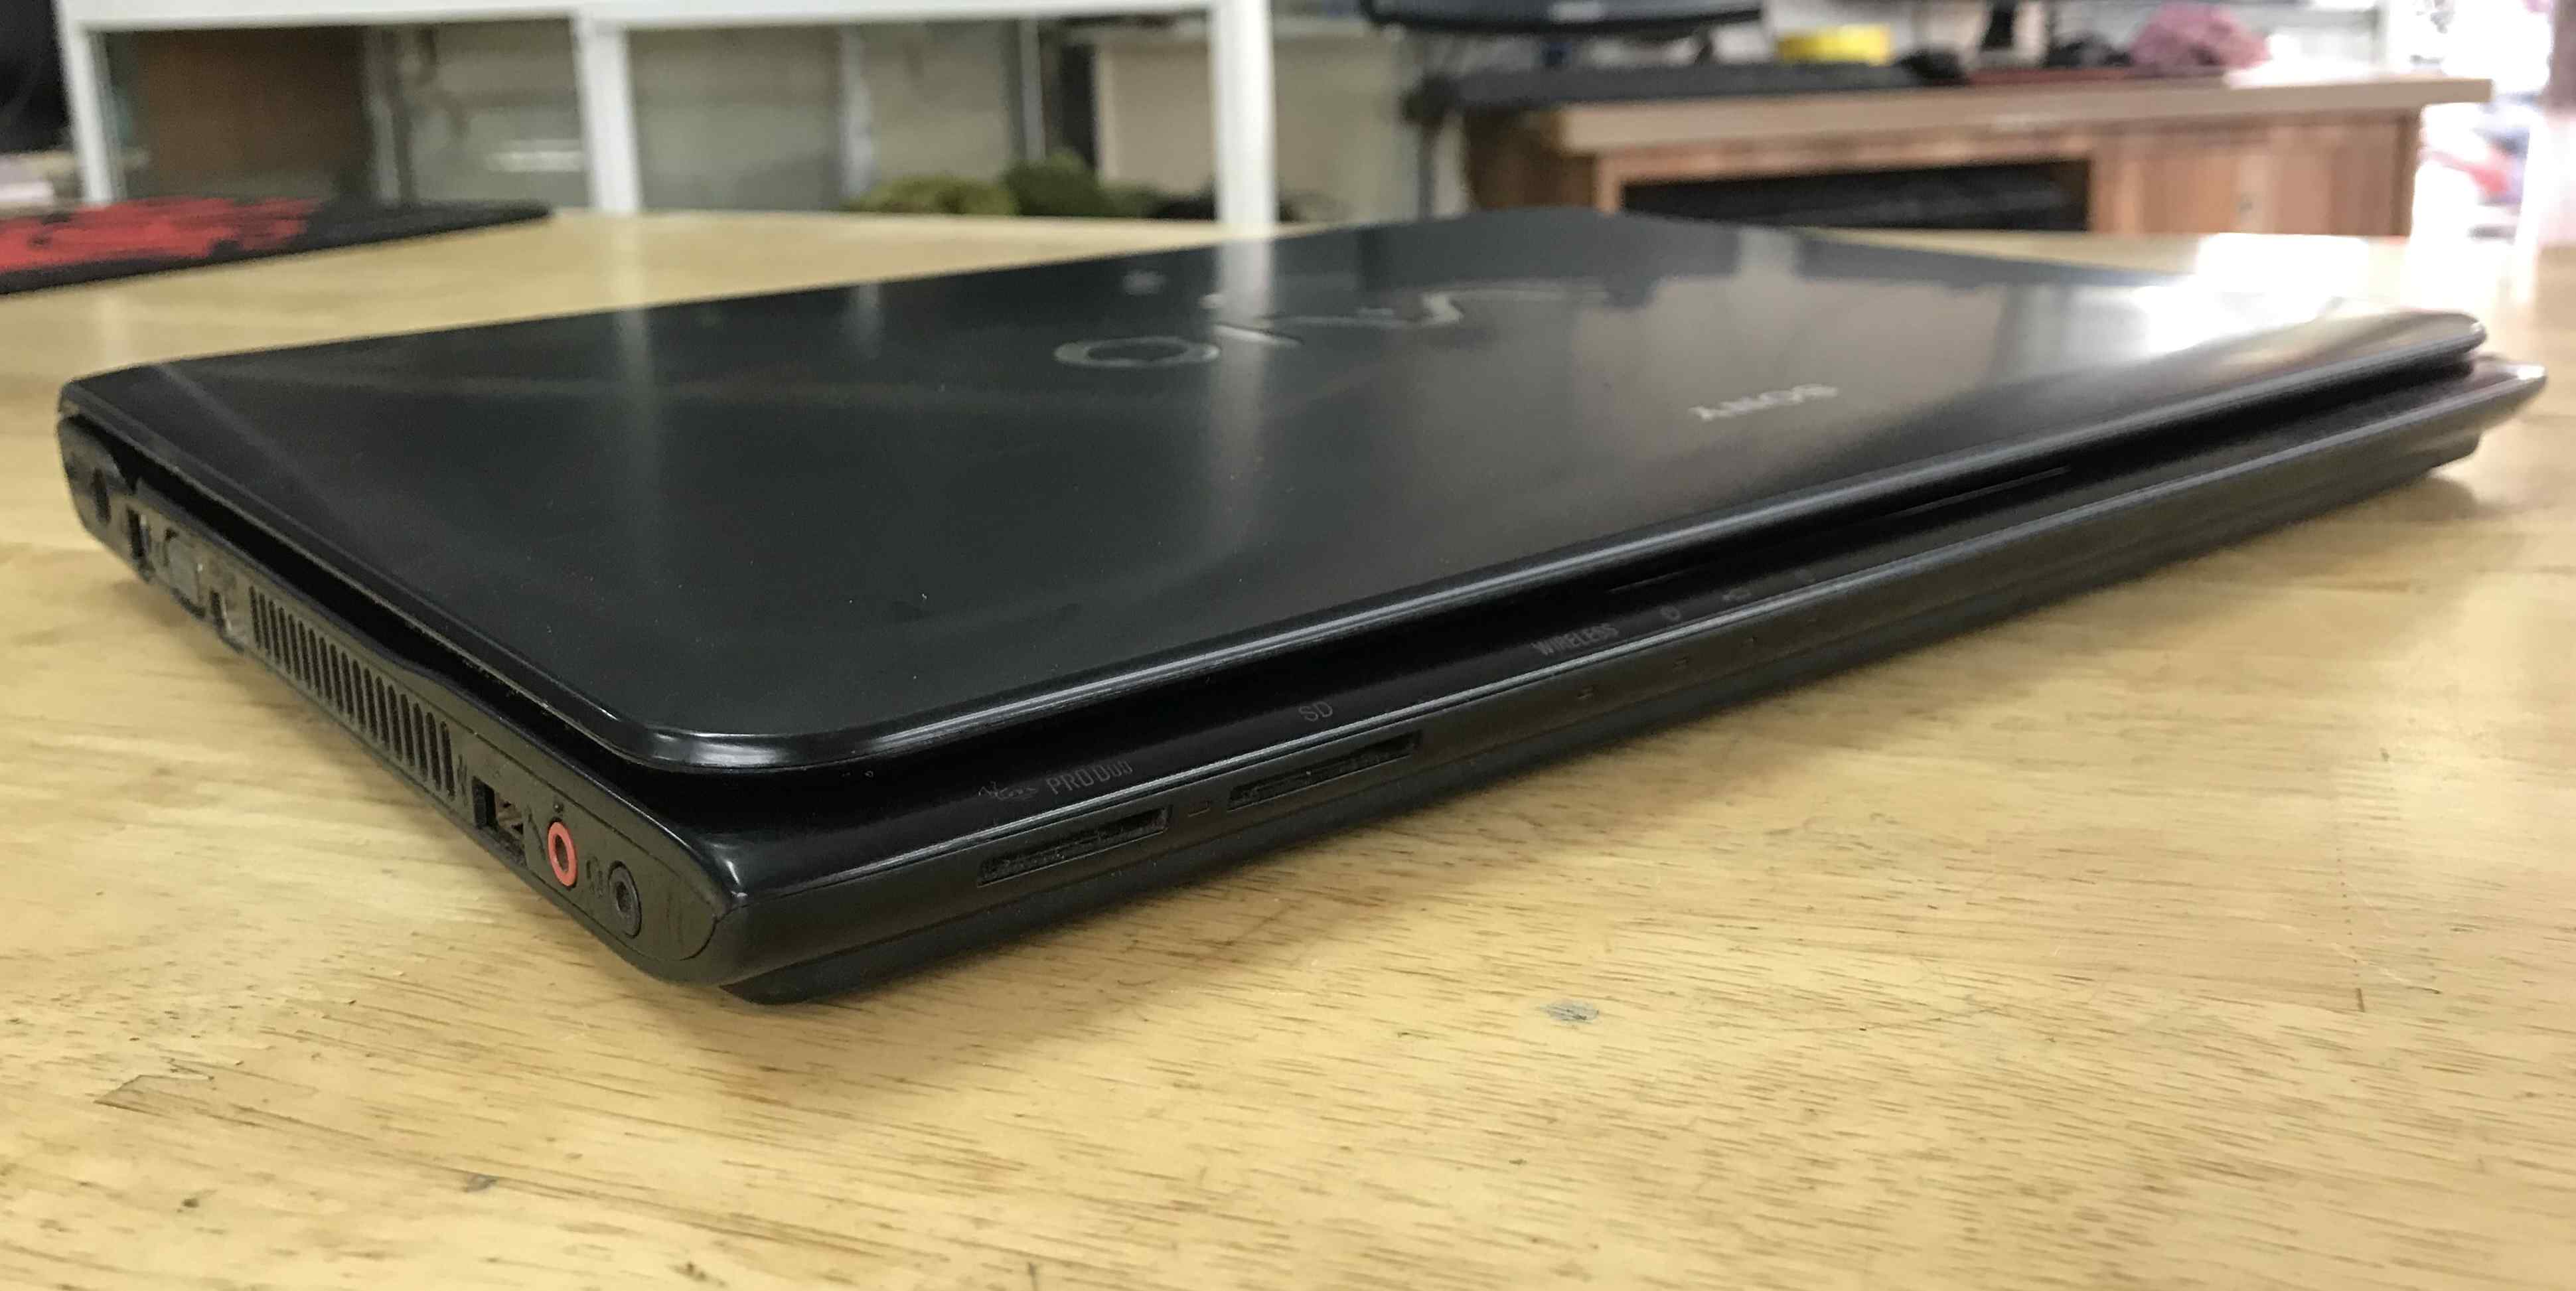 Laptop xách tay Sony Sve14 | Cpu core i5 | Ram 4gb | Ssd 128gb – máy bảo hành 3 tháng 1 đổi 1